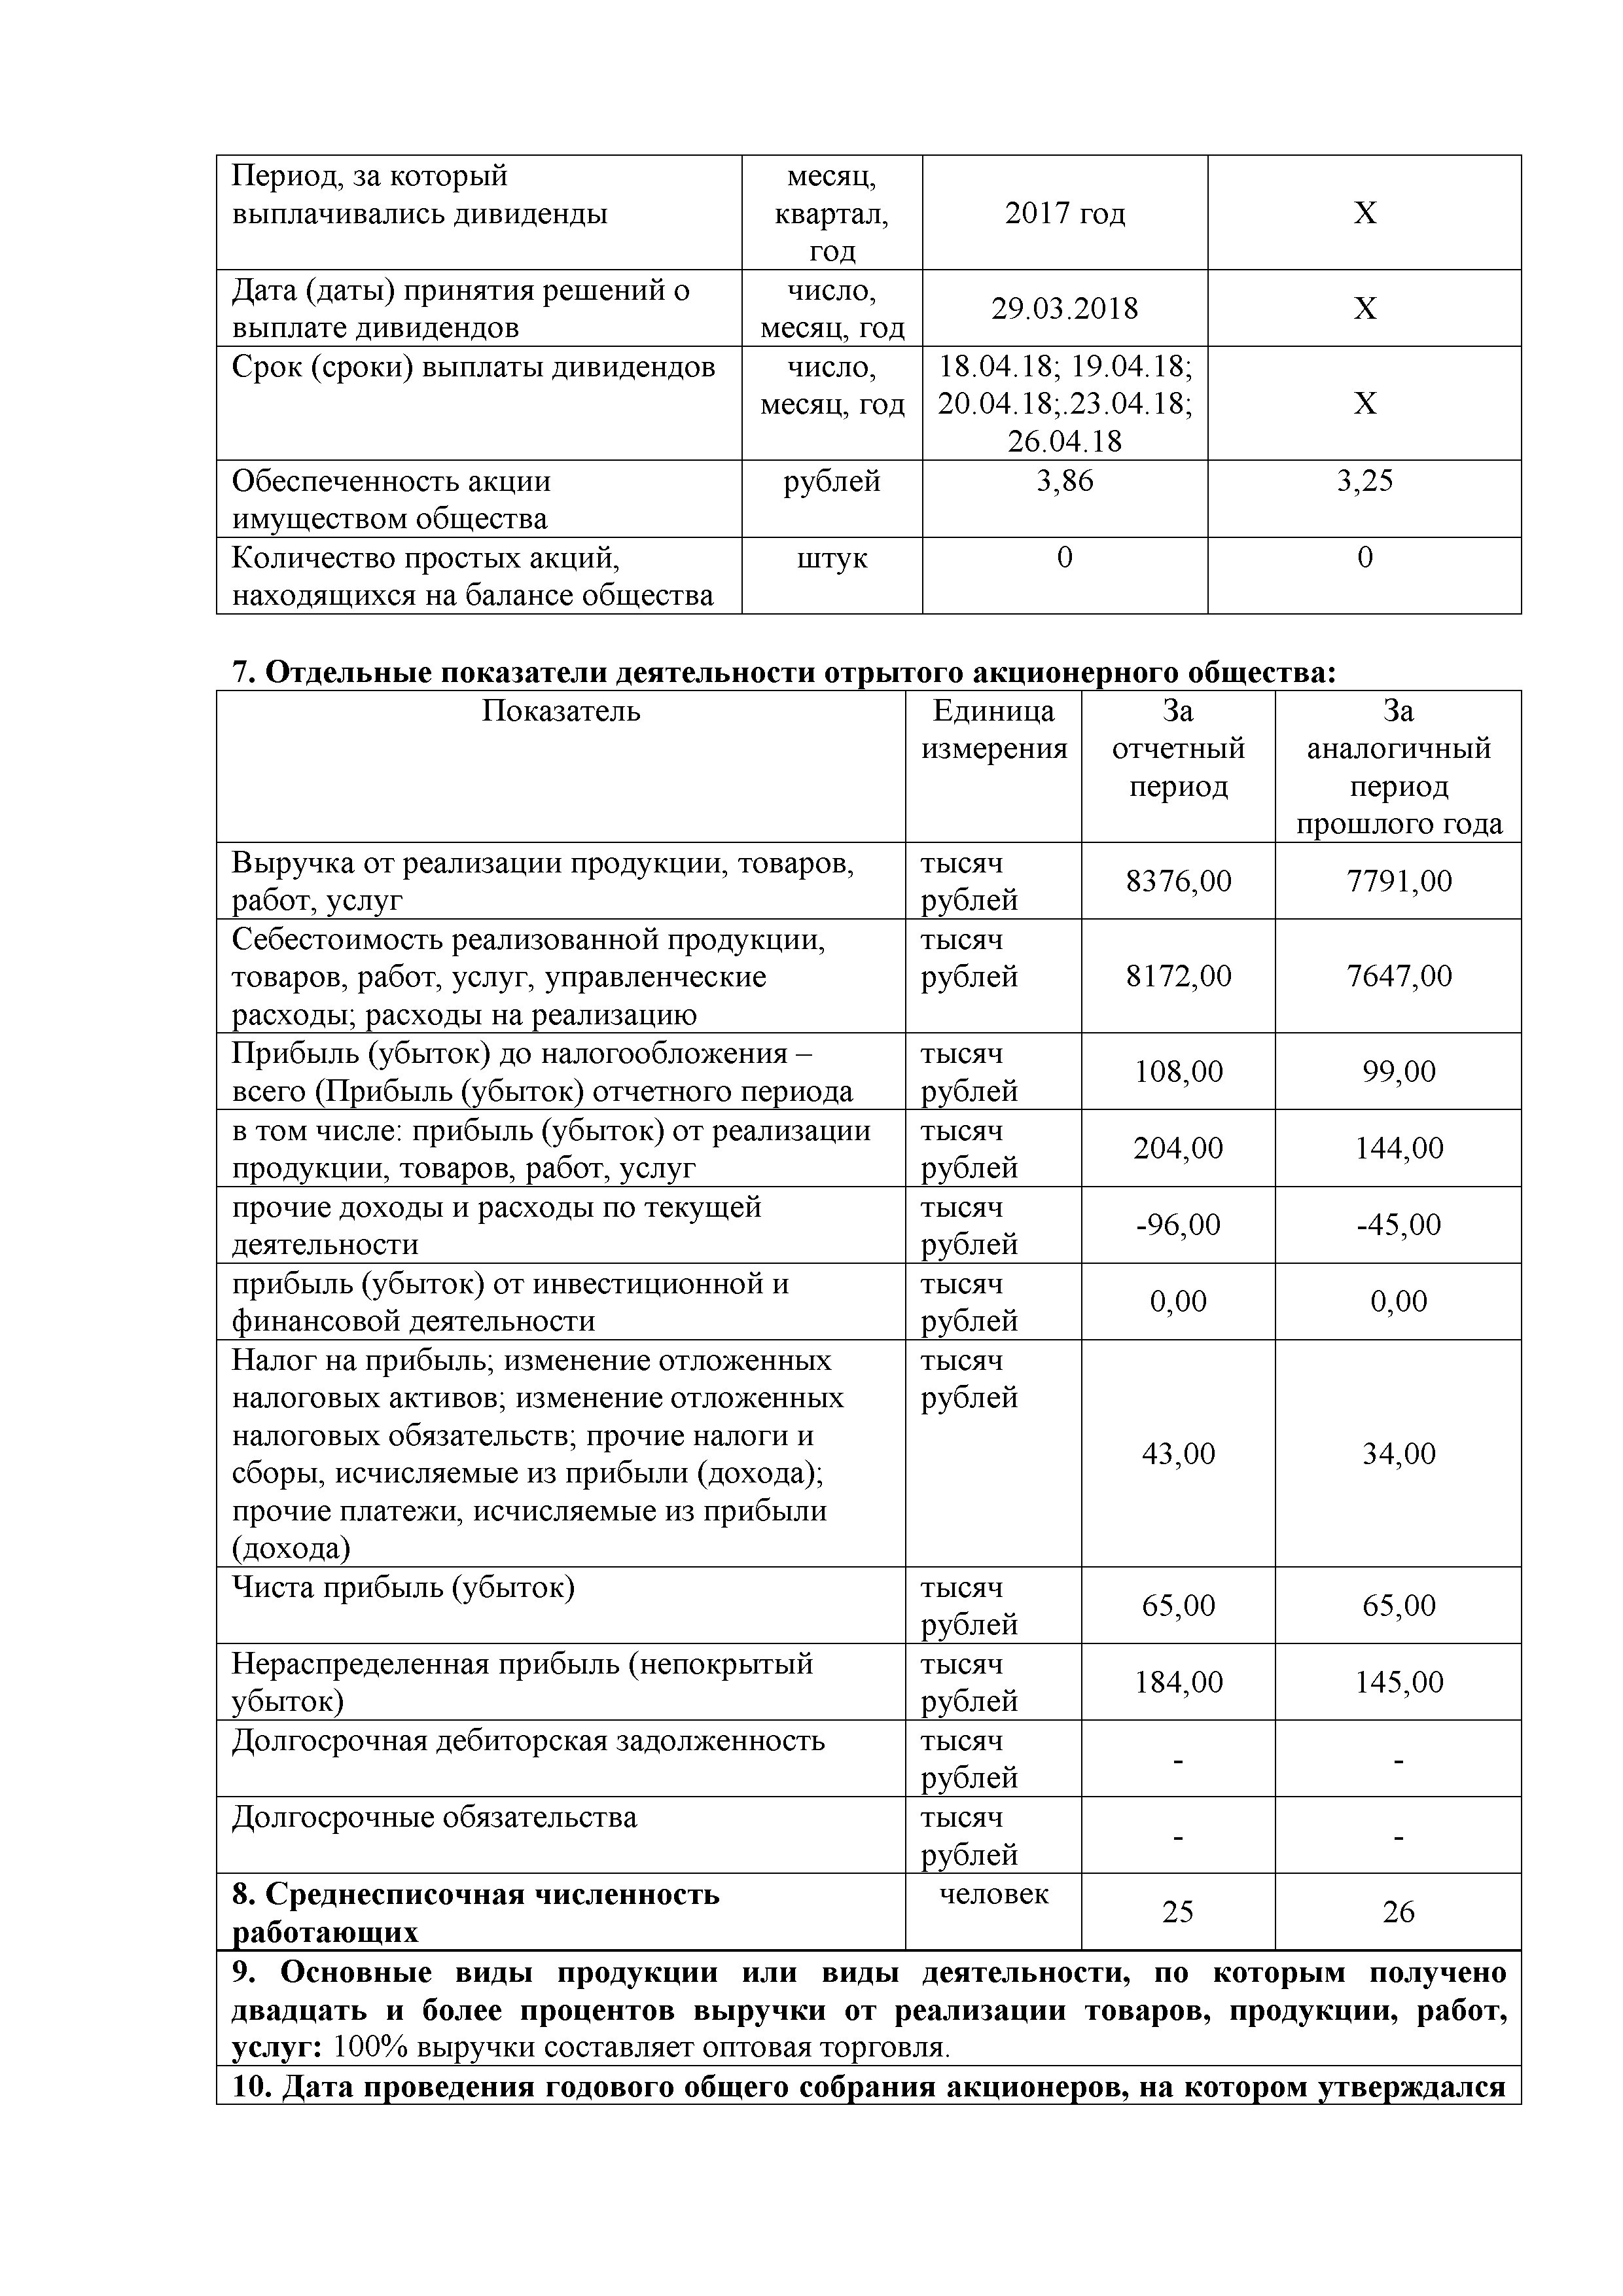 ОАО Торговый дом Сож - Годовой отчет эмитента за 2018 год (страница 2)